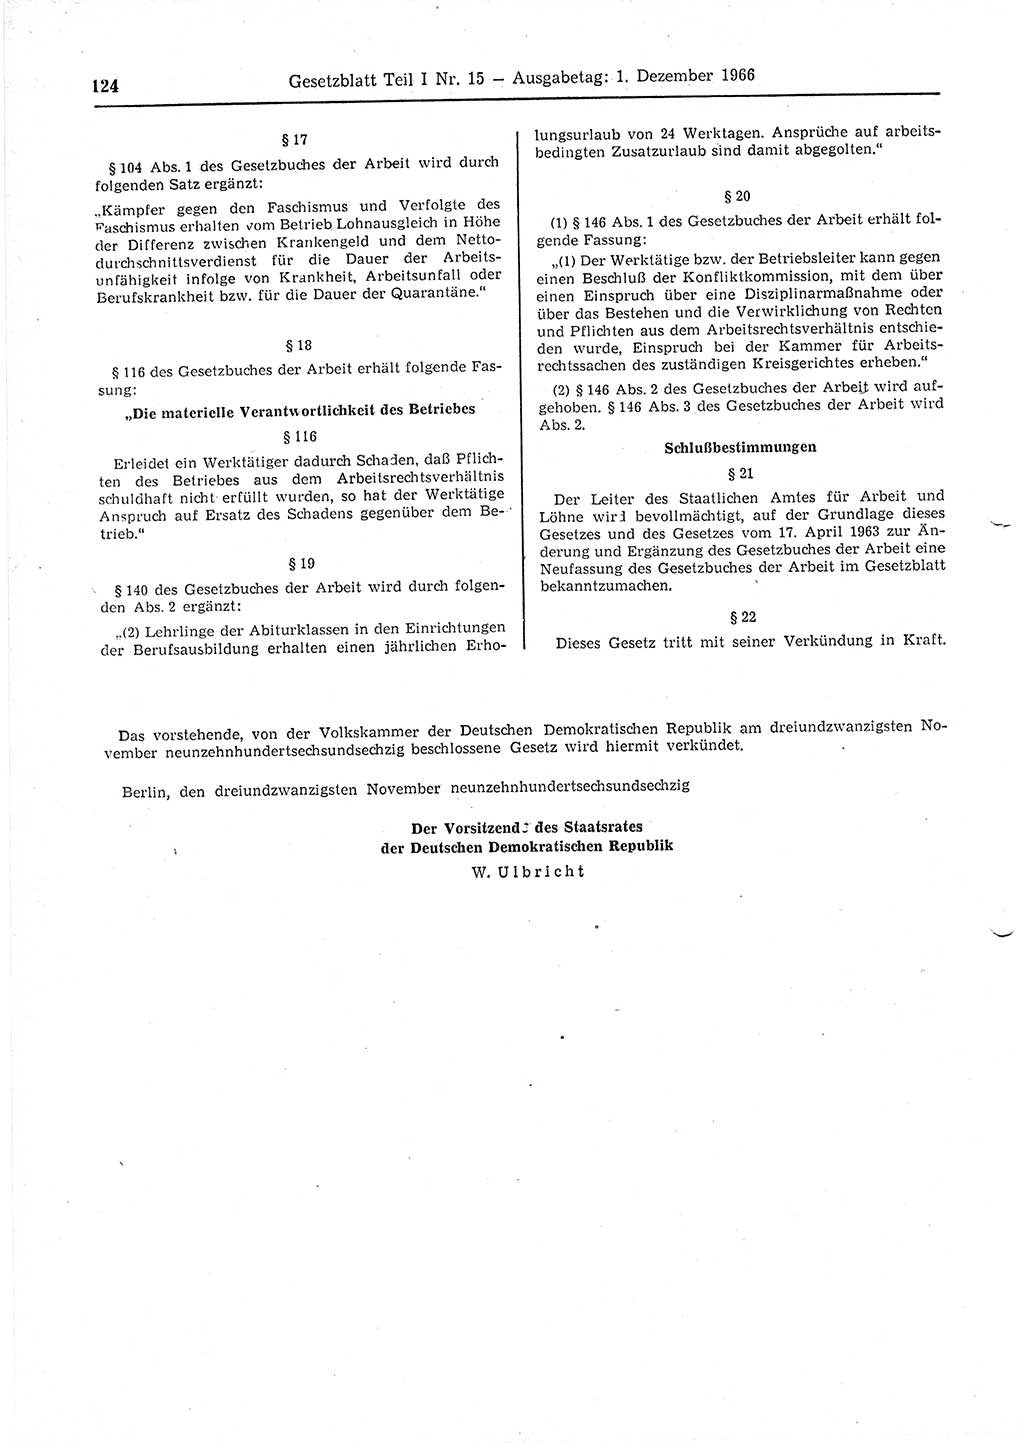 Gesetzblatt (GBl.) der Deutschen Demokratischen Republik (DDR) Teil Ⅰ 1966, Seite 124 (GBl. DDR Ⅰ 1966, S. 124)